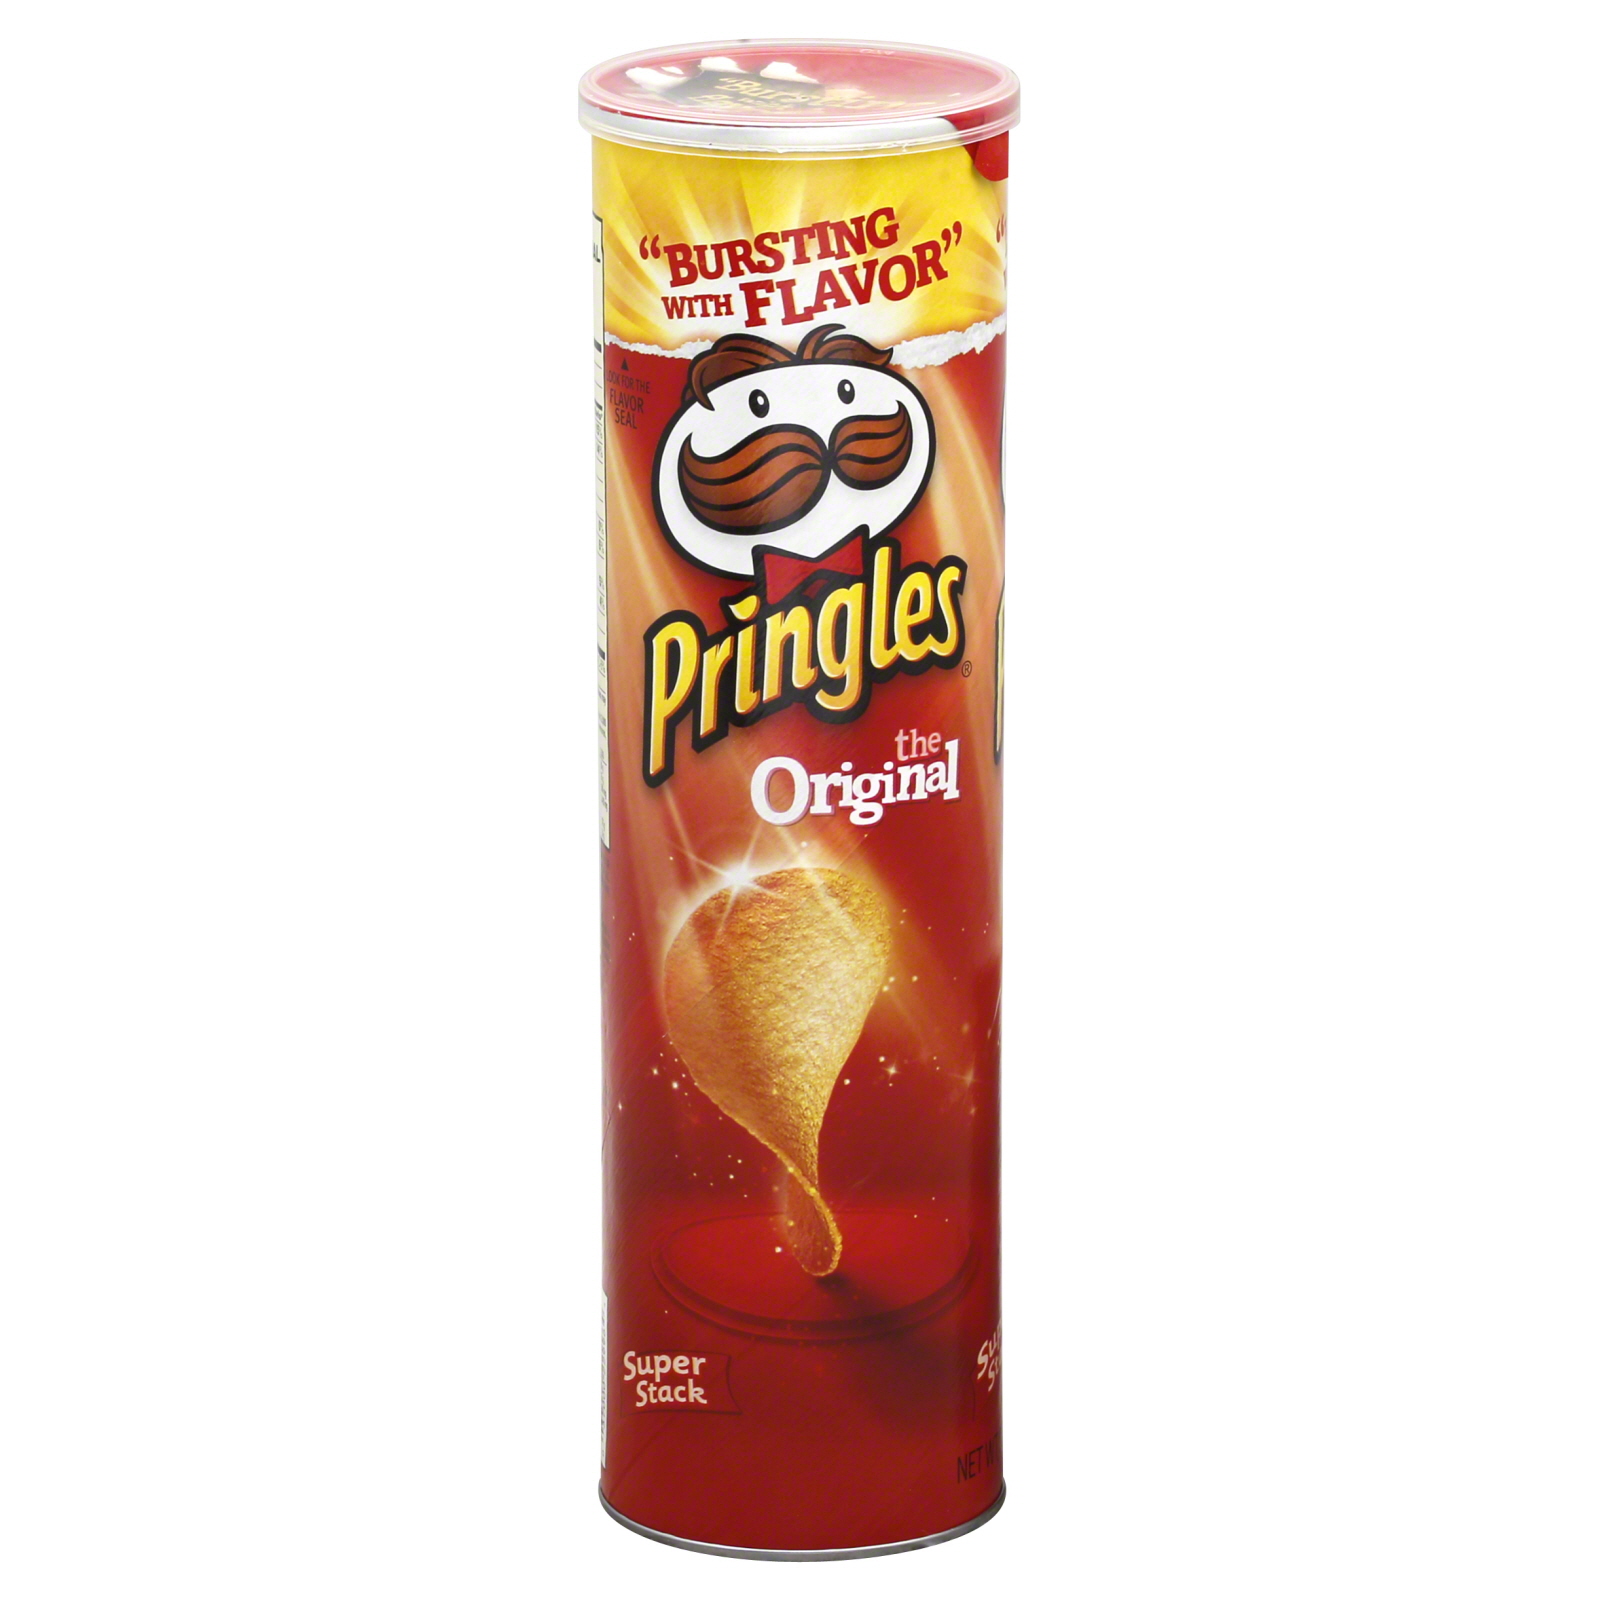 Pringles Potato Crisps, The Original, Super Stack, 6.41 oz (182 g)